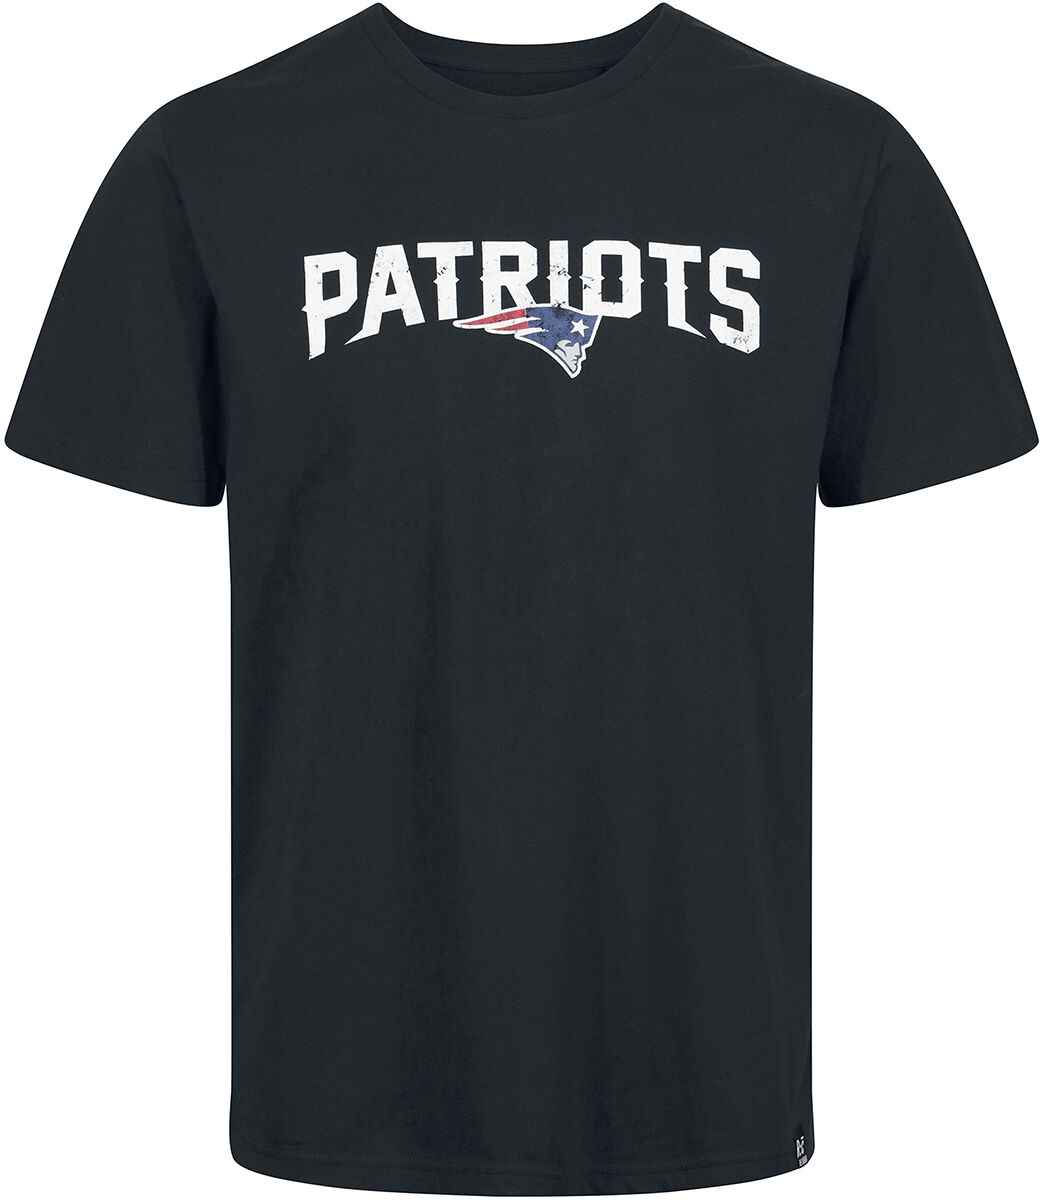 Recovered Clothing T-Shirt - NFL Patriots Logo - S bis M - für Männer - Größe M - schwarz